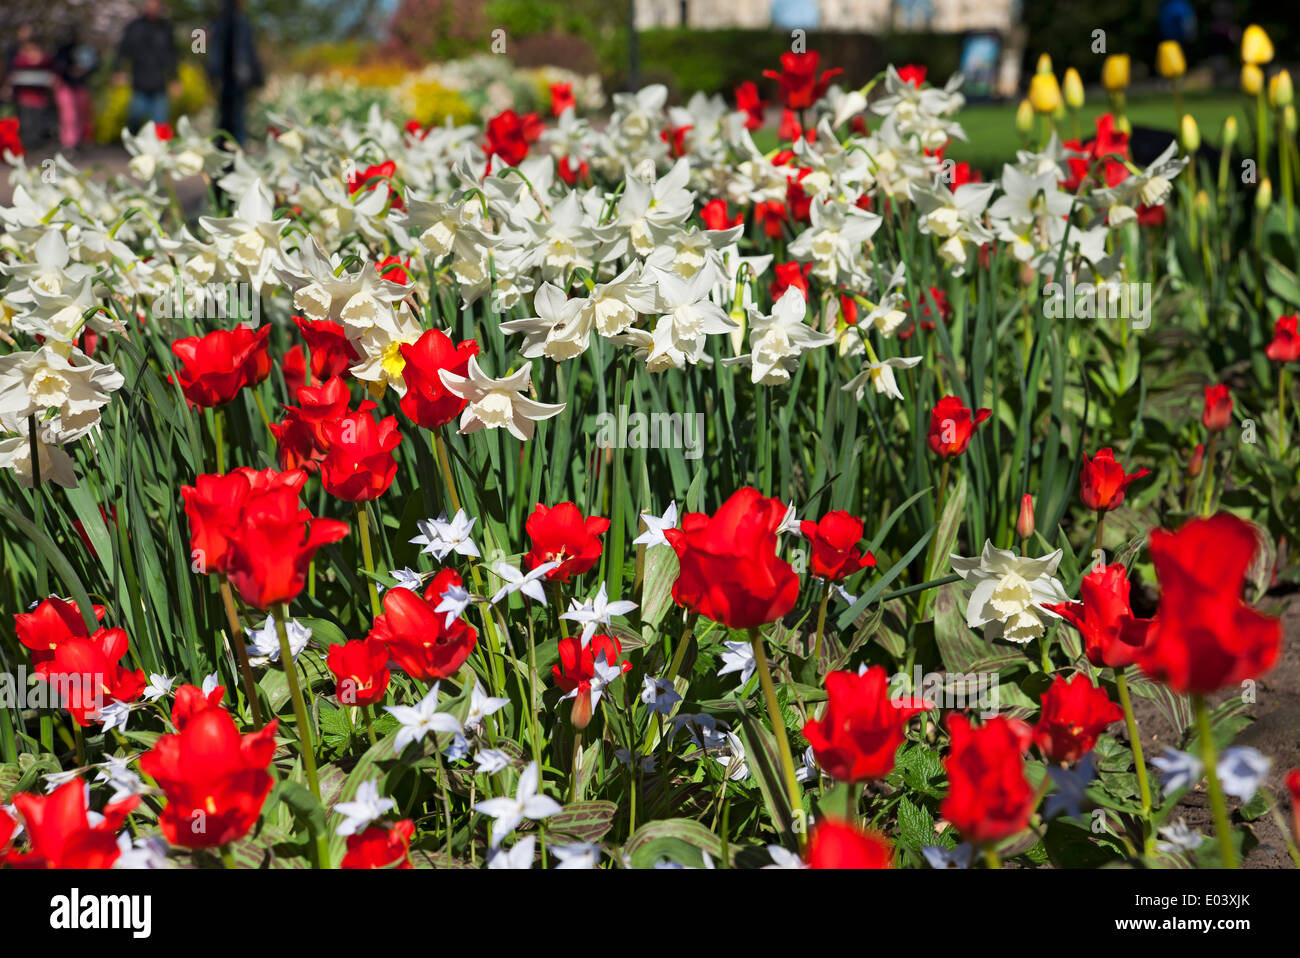 Bianco narcisi narcissus fiori fioritura e tulipani rossi tulipano in misto confine primavera giardino Inghilterra Regno Unito Foto Stock